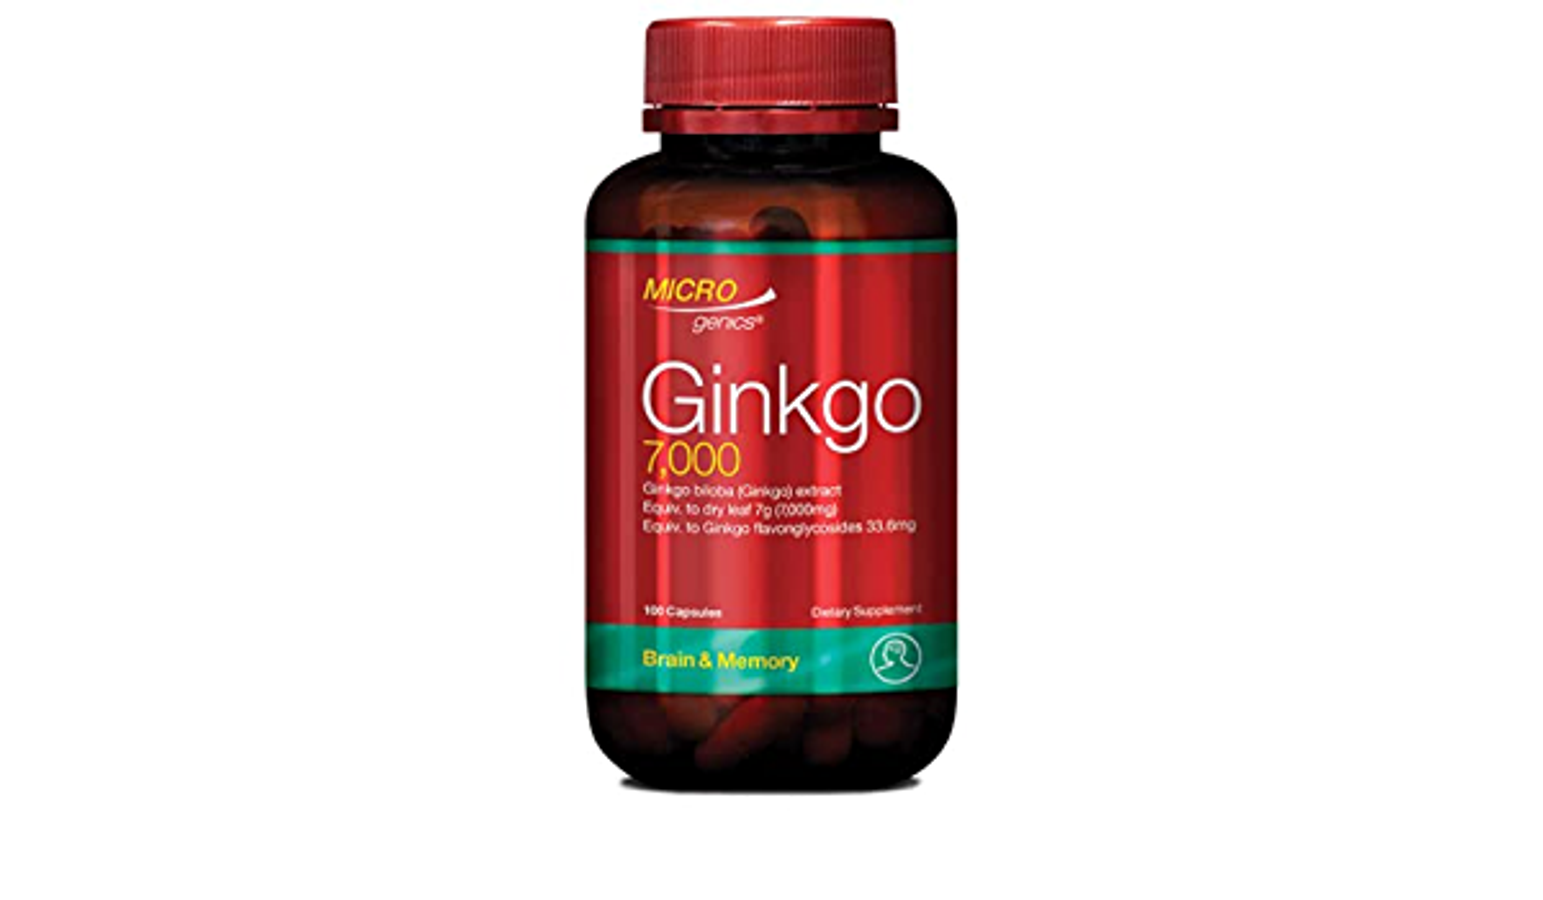 Thuốc Ginkgo 7000 có tác dụng gì và có an toàn cho sức khỏe không?